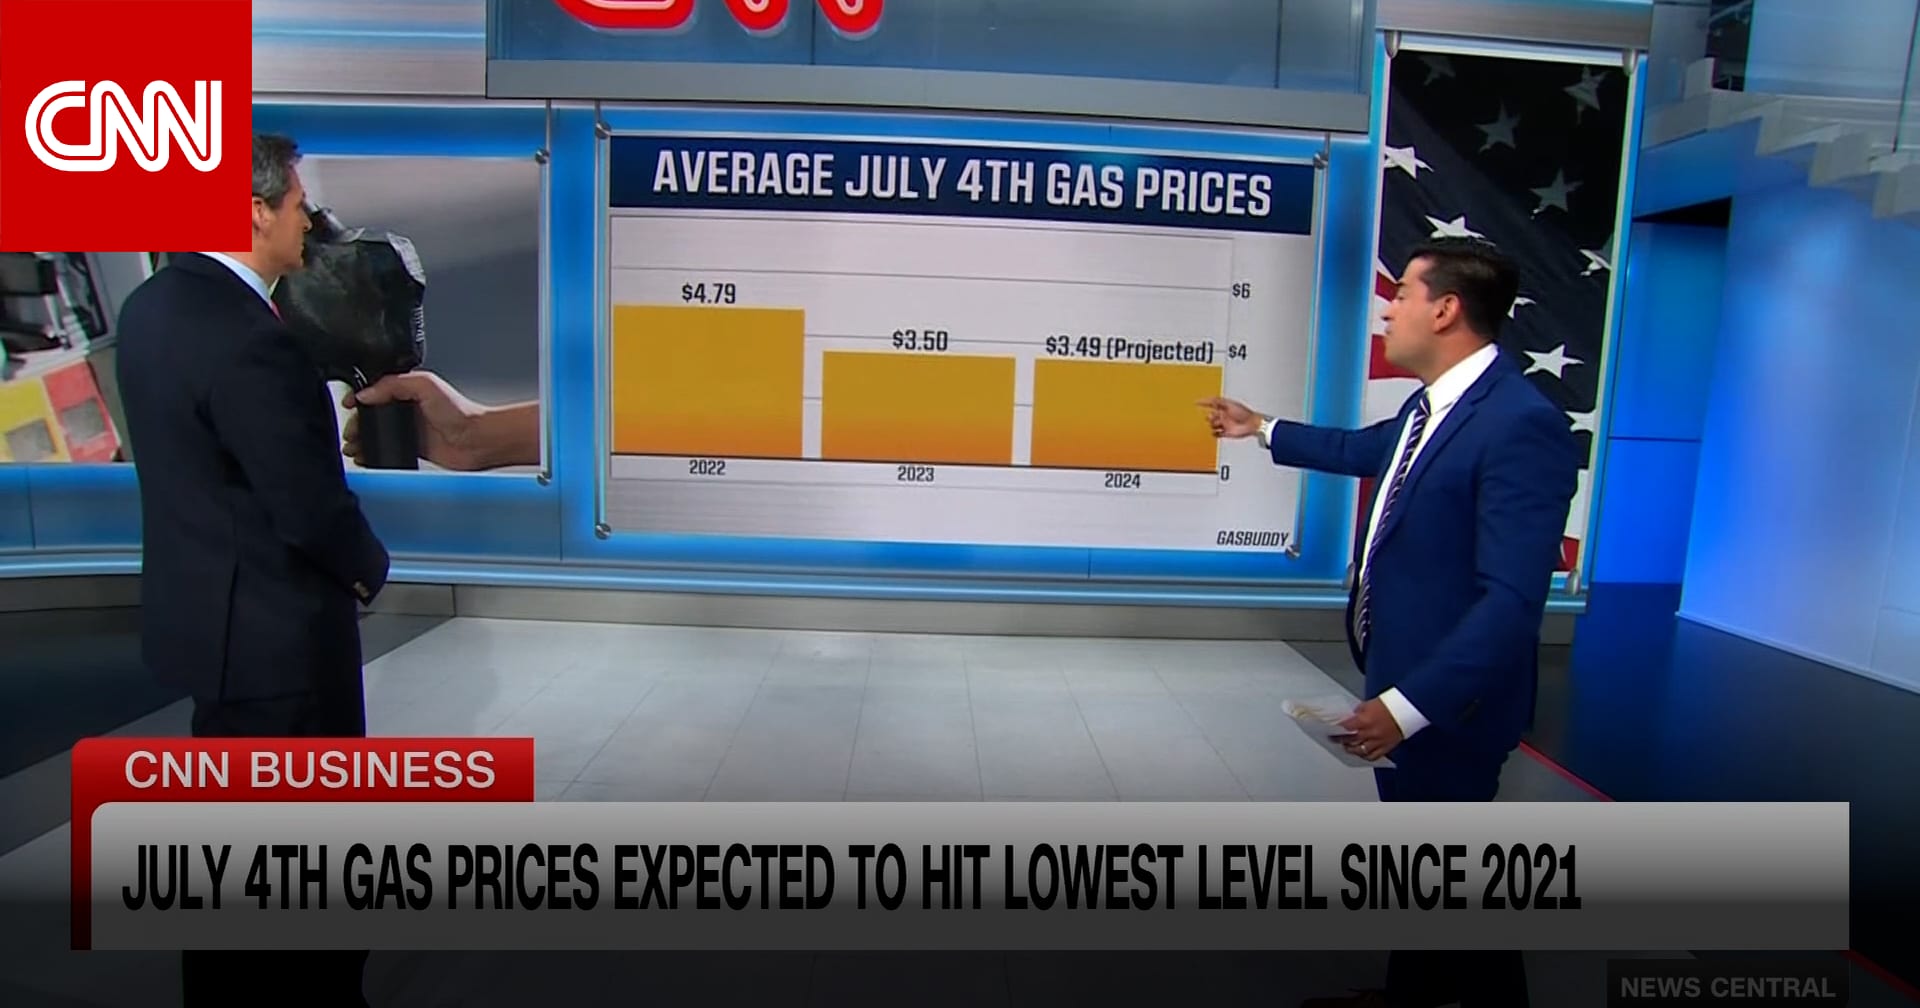 "الأدنى منذ عامين".. مراسل CNN يلقي نظرة على أسعار "مفاجئة" للنفط في أمريكا